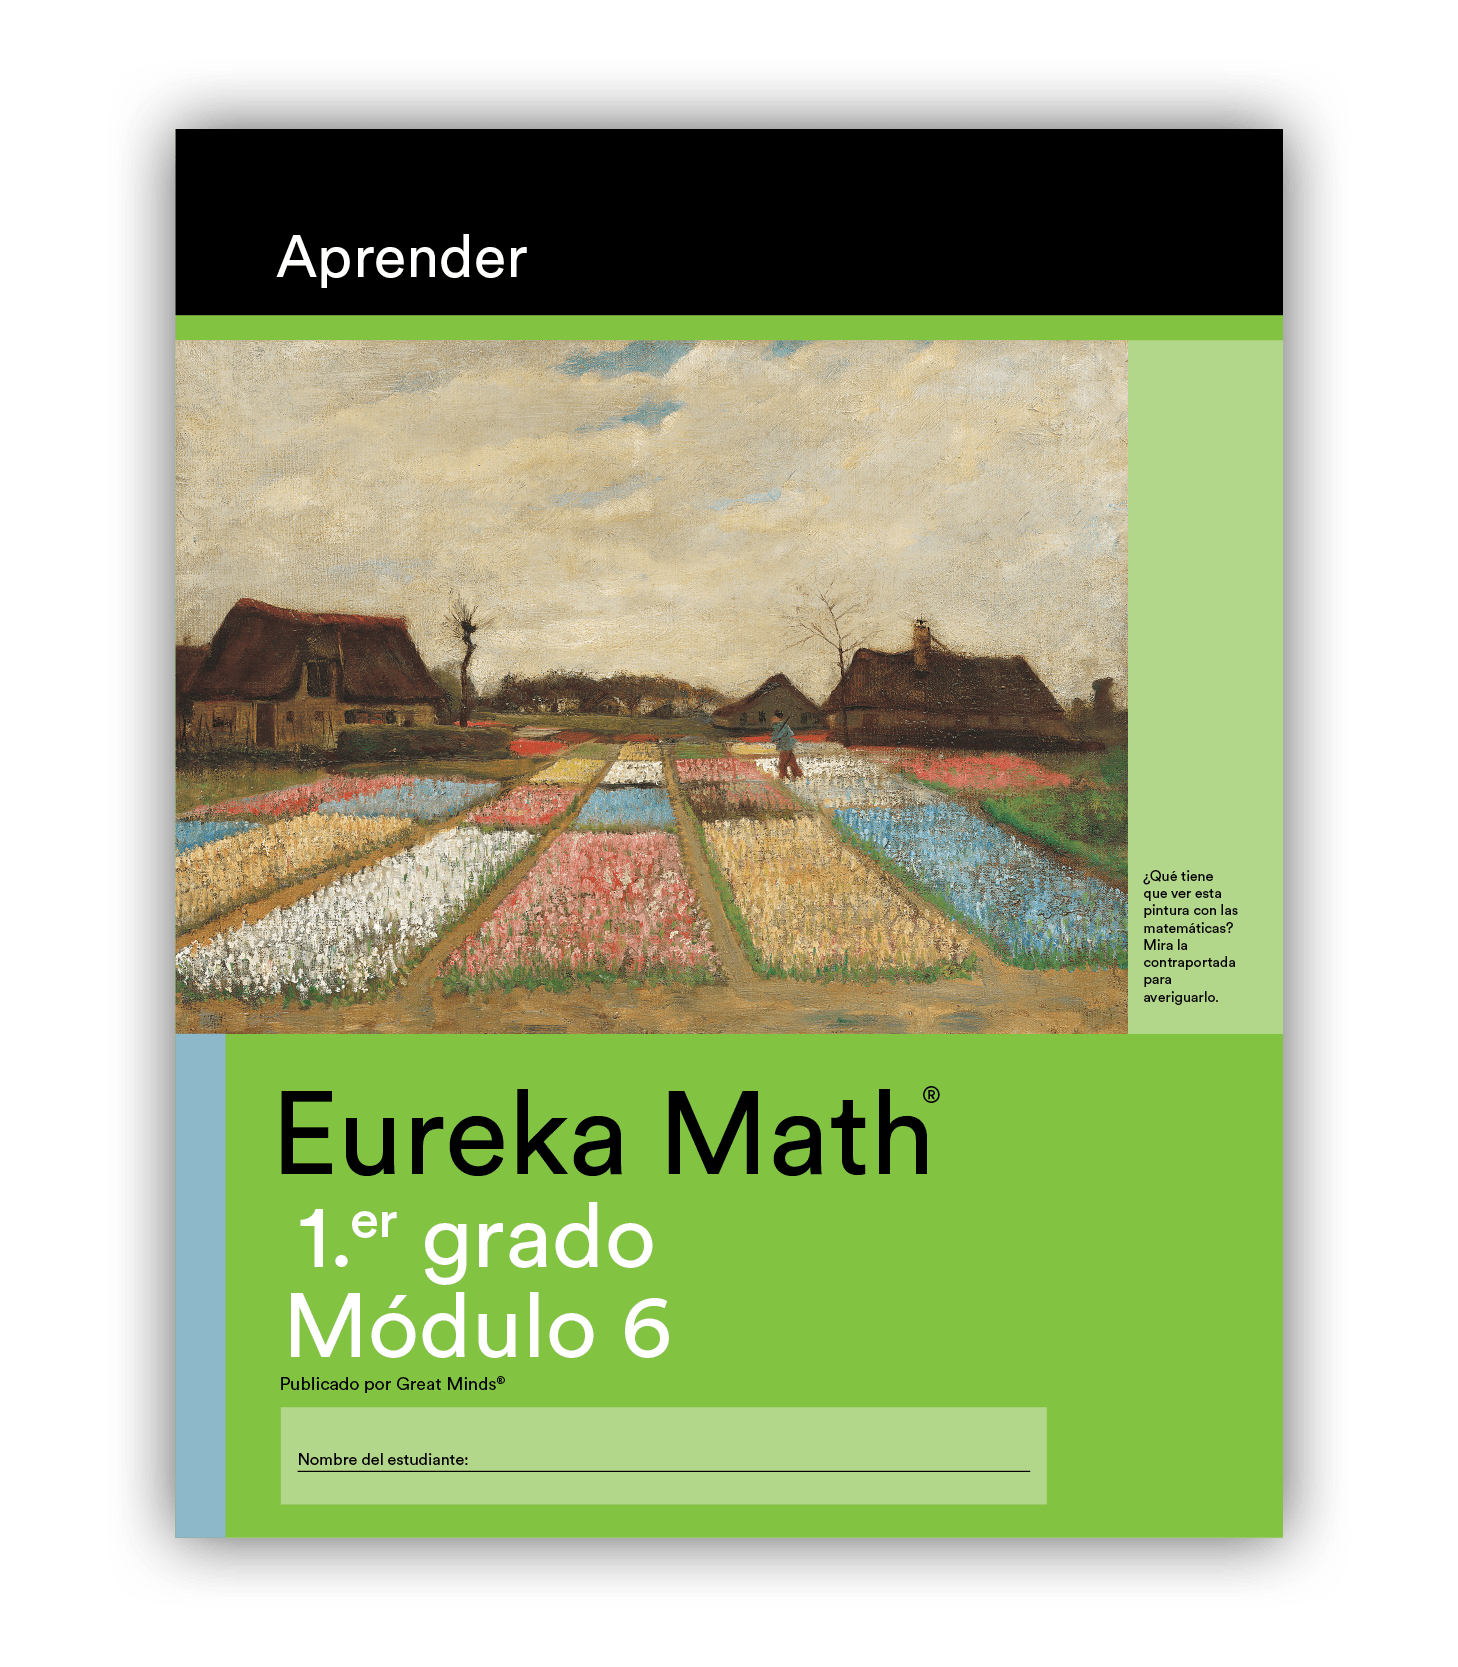 Eureka Math Learn Book in Spanish for Grade 1